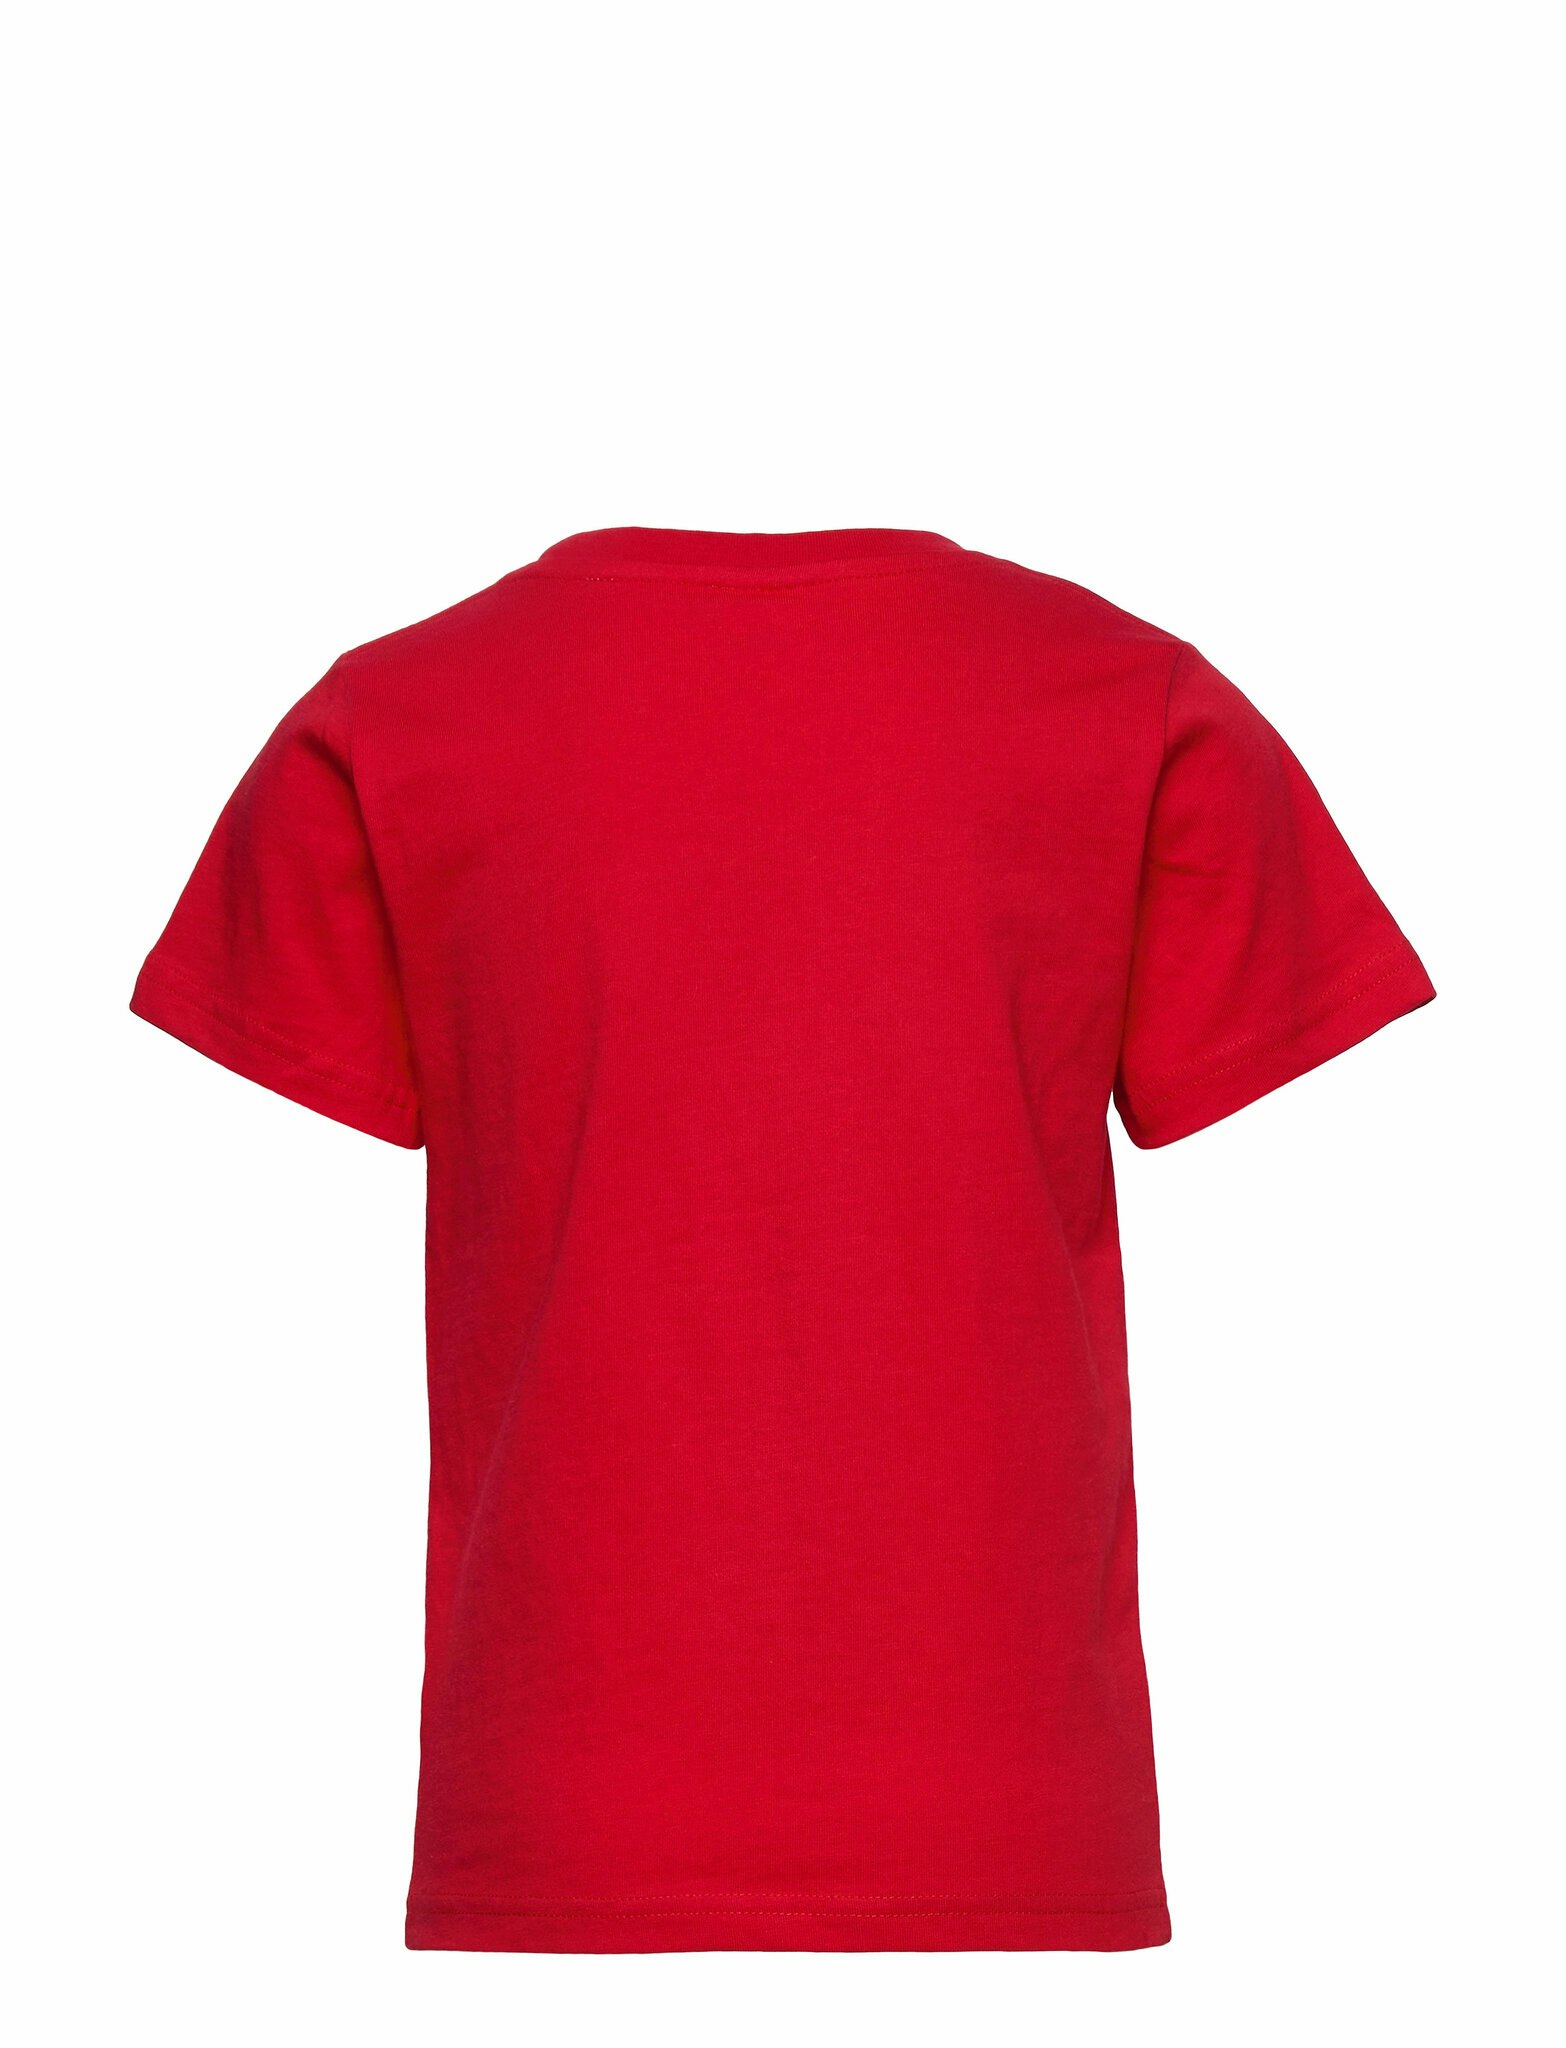 T-Shirt, Pippi Långstrump Röd